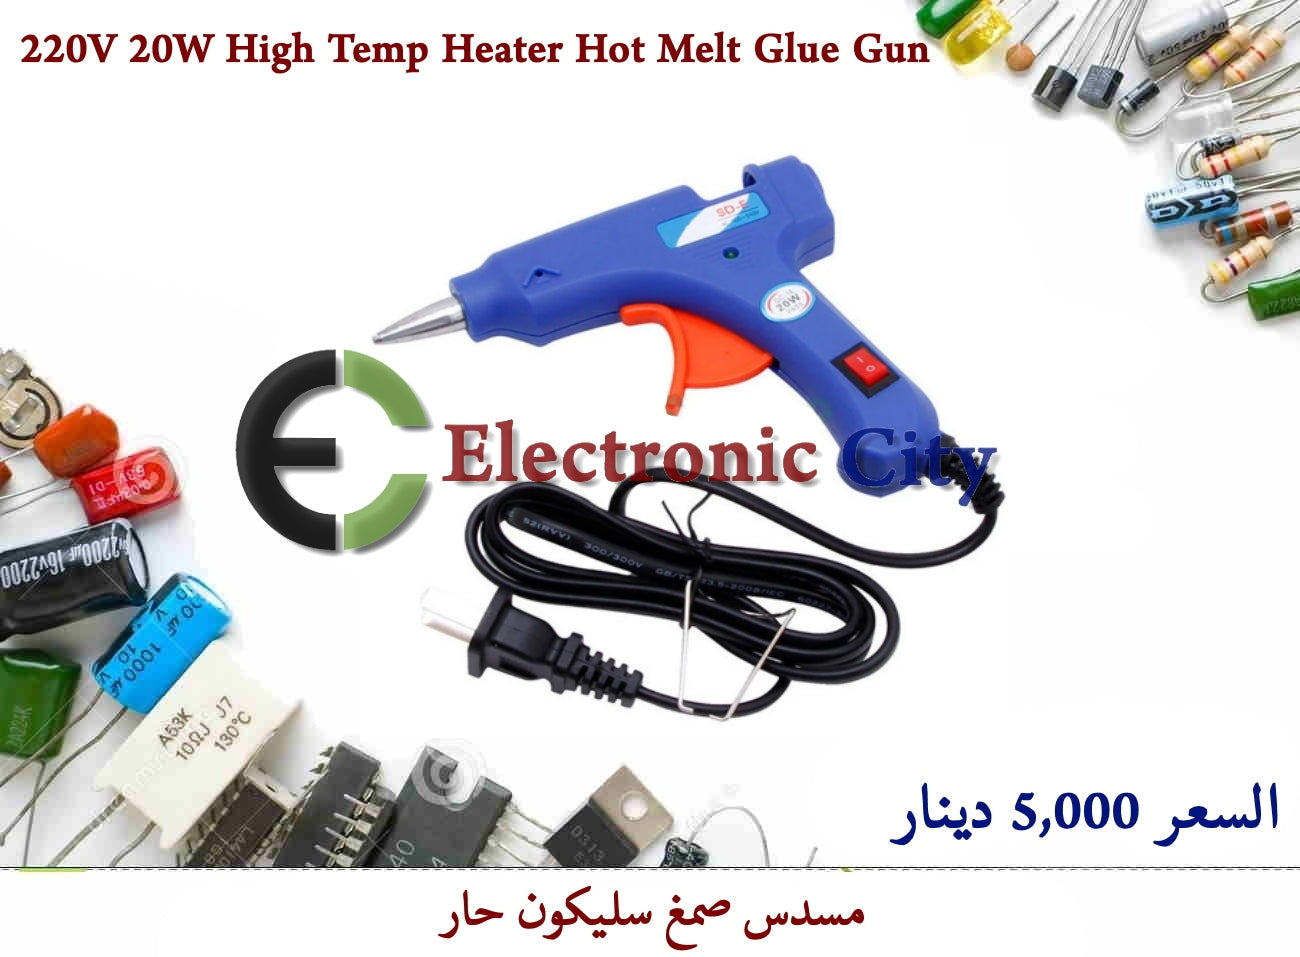 220V 20W High Temp Heater Hot Melt Glue Gun #D9